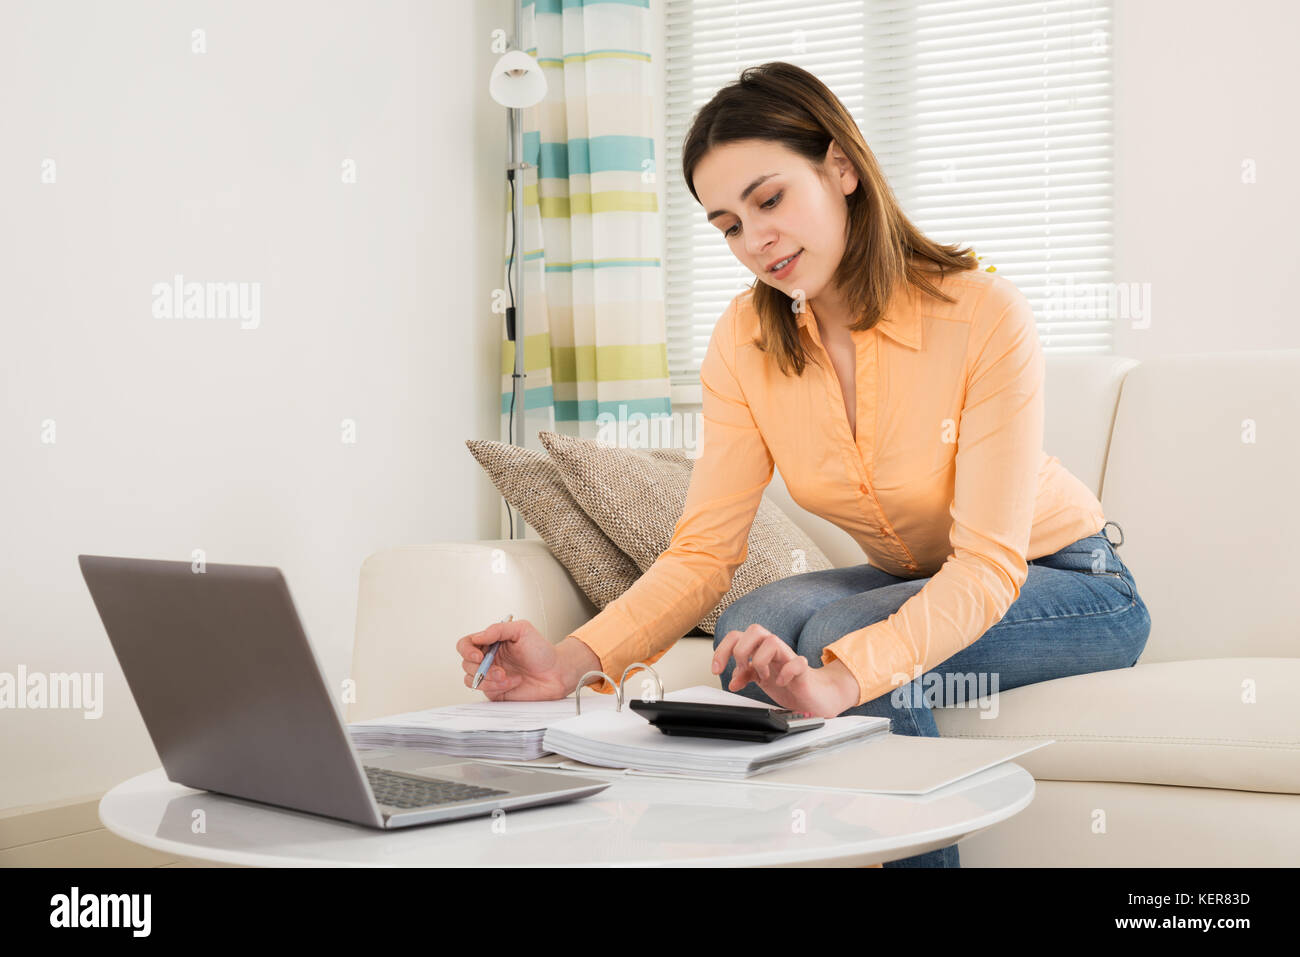 Mujer joven sentado en un sofá calcular las facturas en su habitación Foto de stock